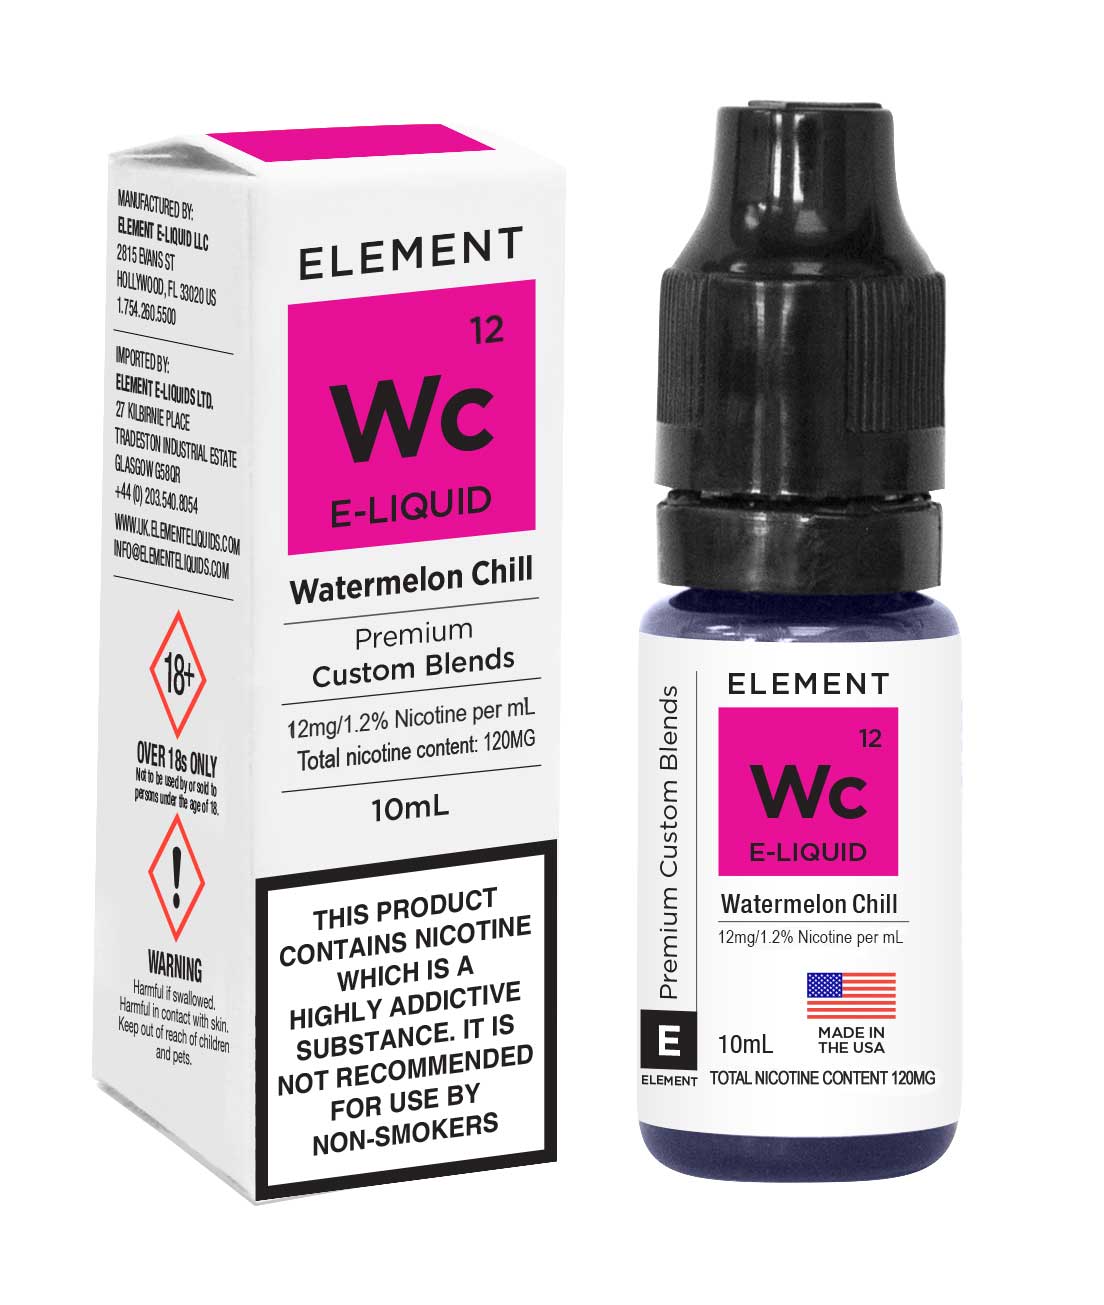 Element E-liquid Watermelon Chill 10ml - 12mg Nicotine